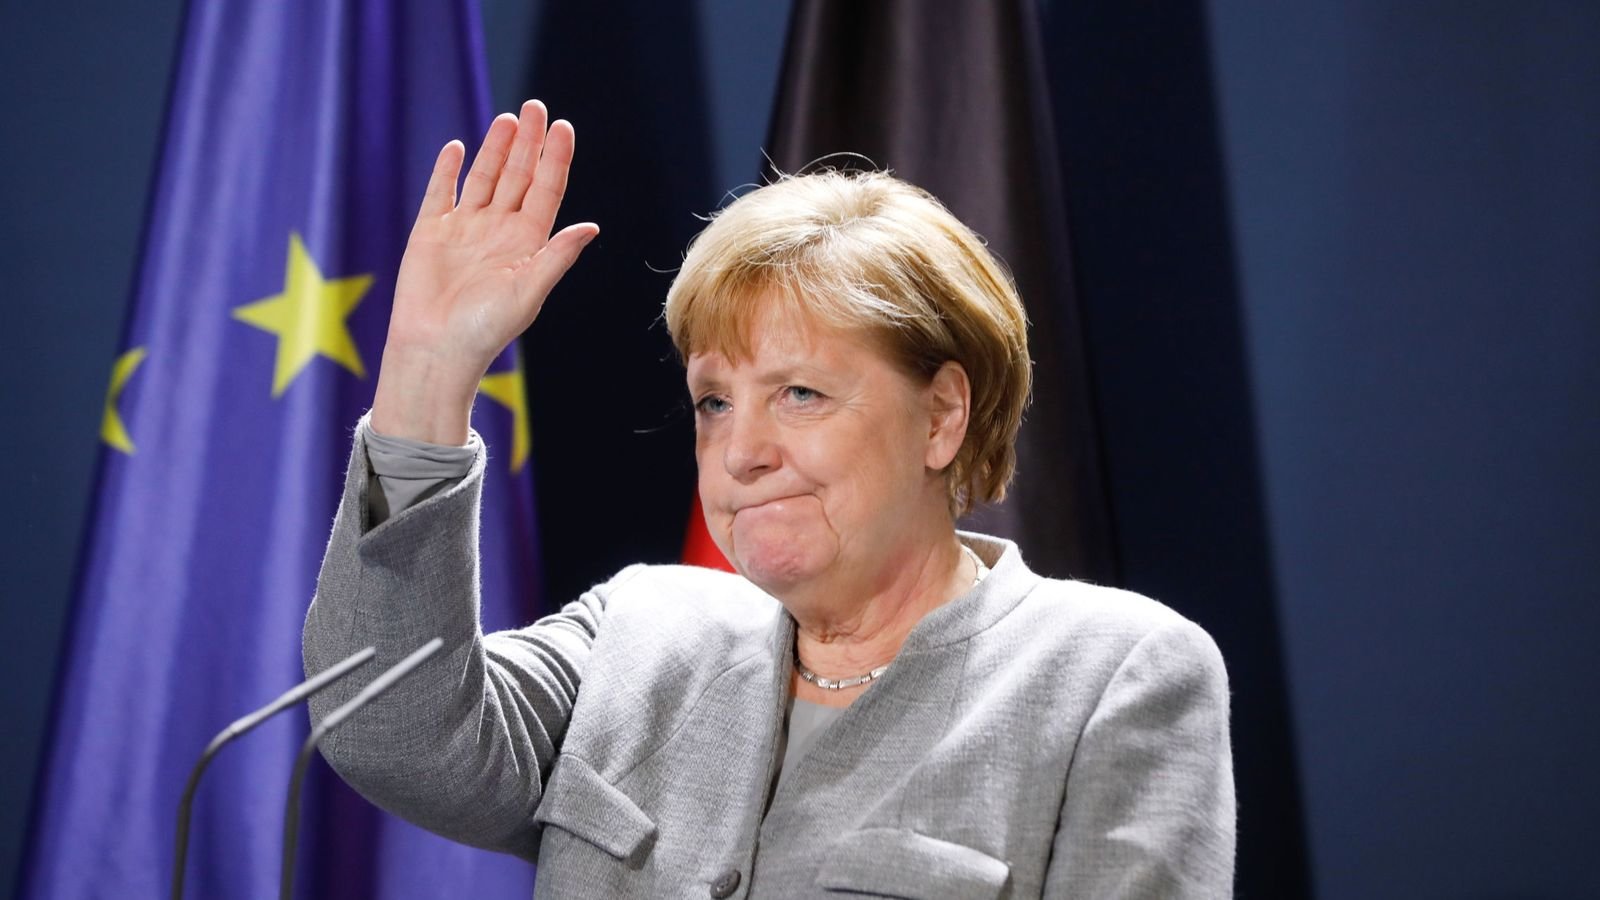 Στις κάλπες οι Γερμανοί: Τέλος εποχής για την Άνγκελα Μέρκελ – Αγωνία στην Ευρώπη για την επόμενη μέρα